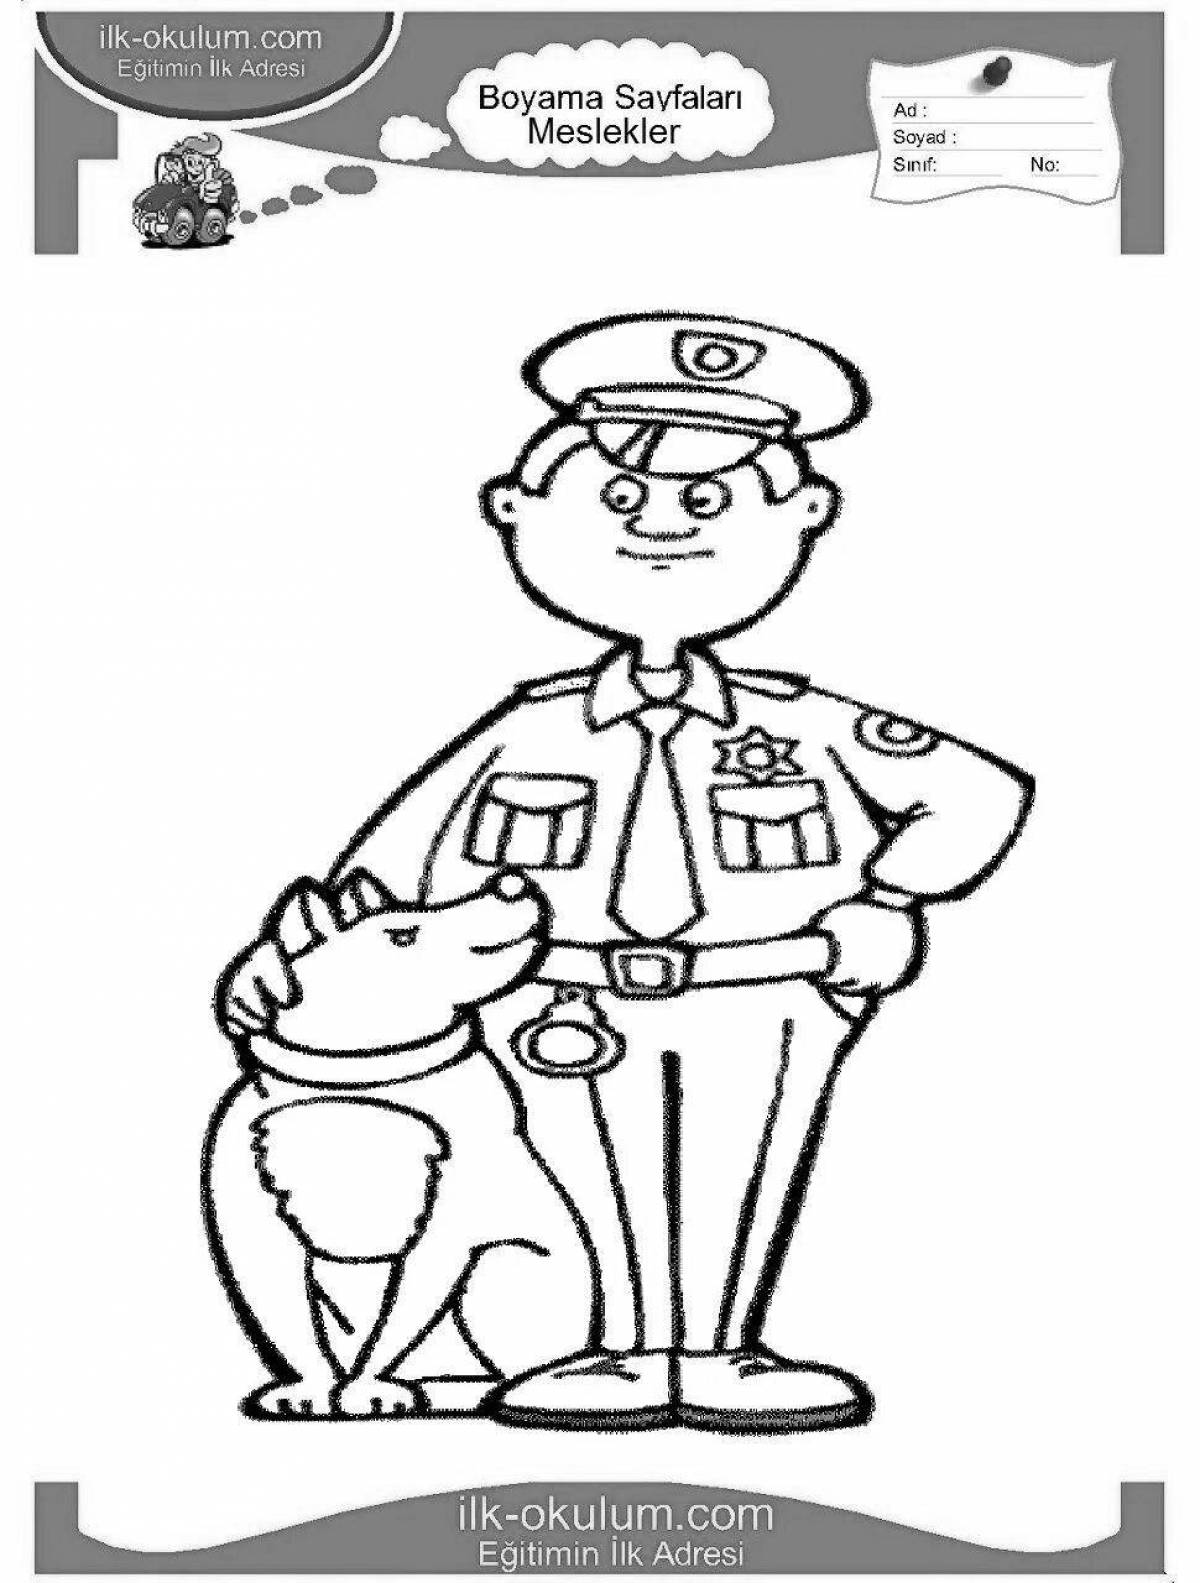 Impressive police coloring book for kids